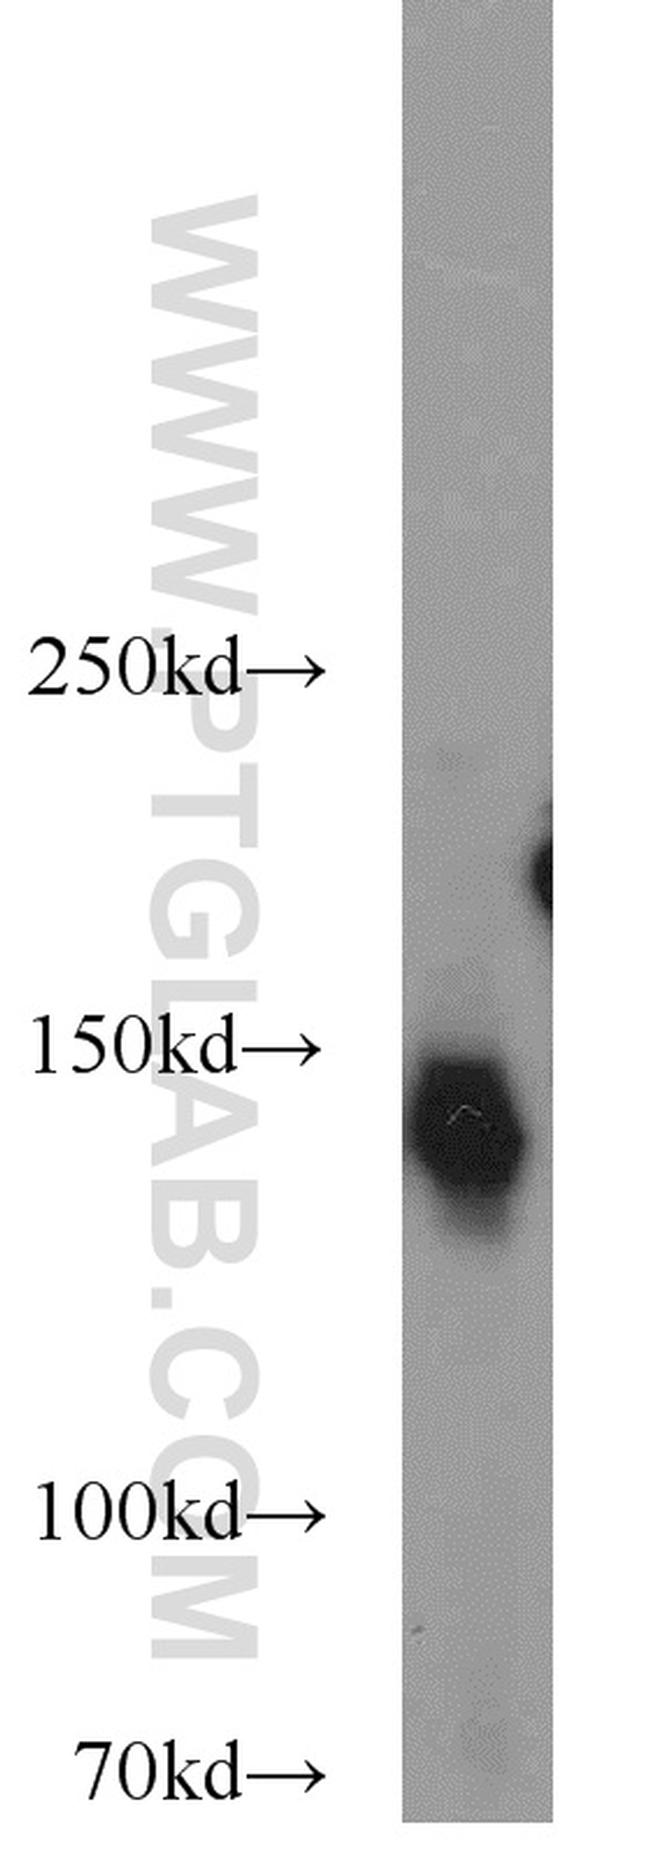 NBR1 Antibody in Western Blot (WB)